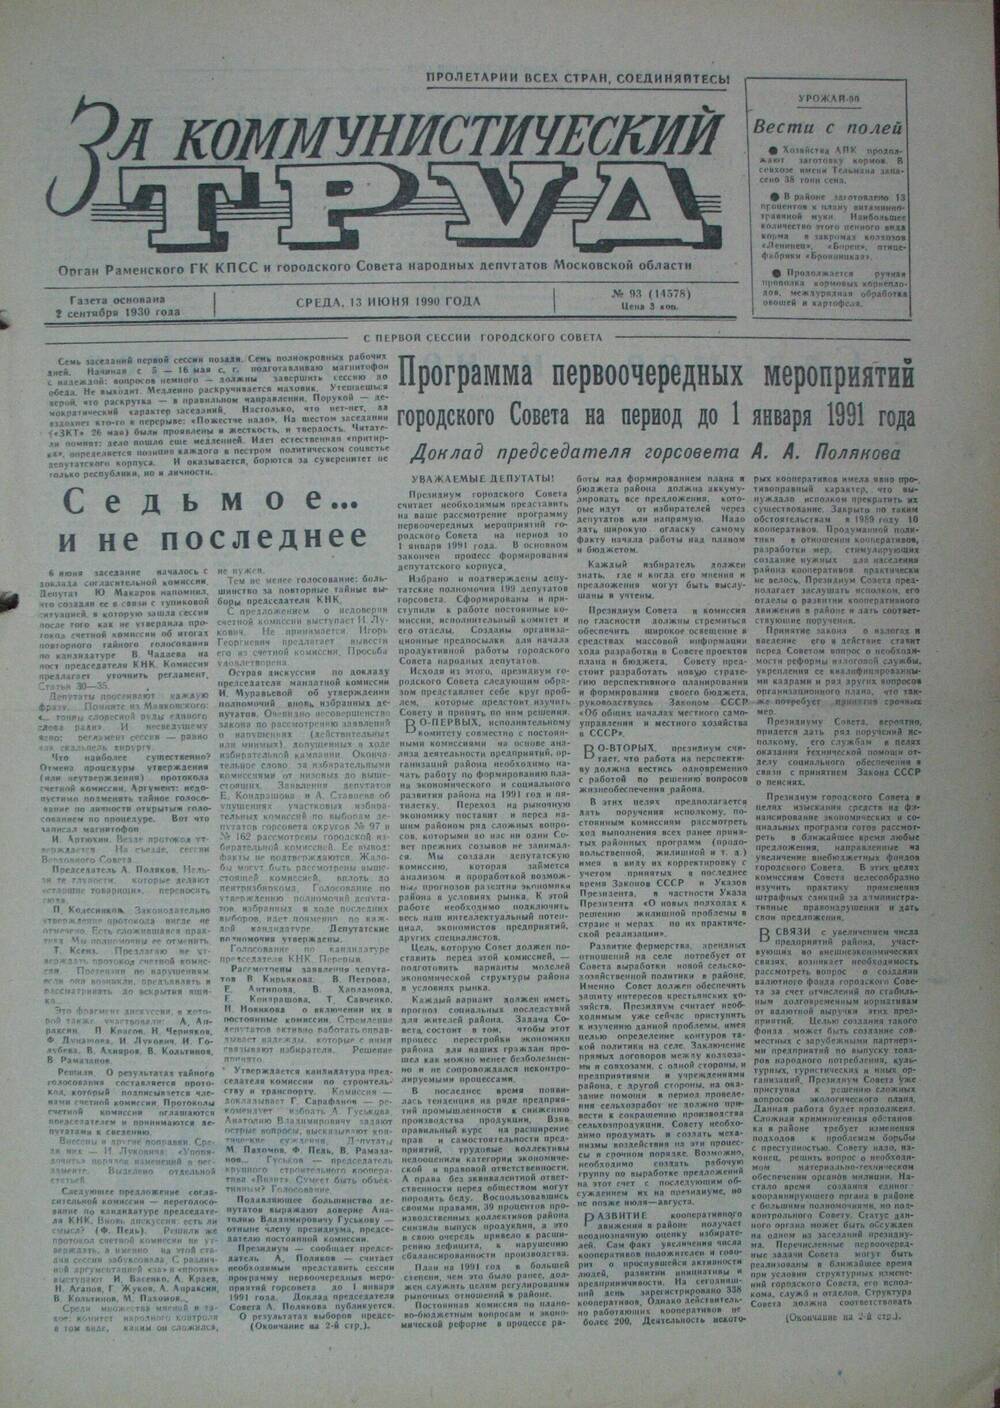 За коммунистический труд, газета № 93 от 13 июня 1990г